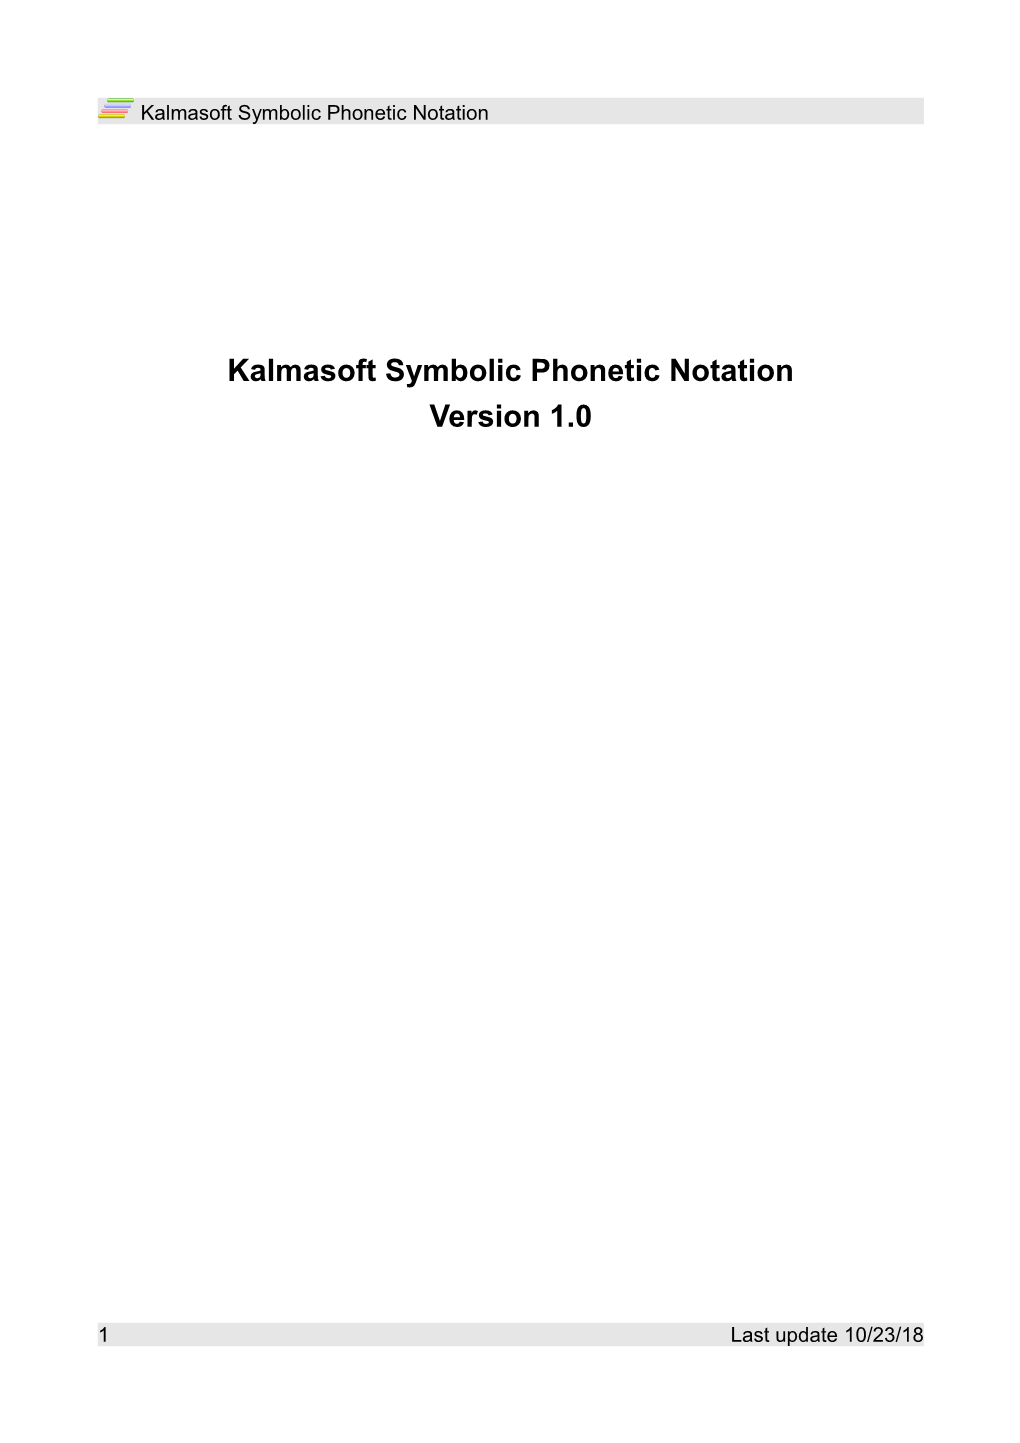 Kalmasoft Symbolic Phonetic Notation Version 1.0